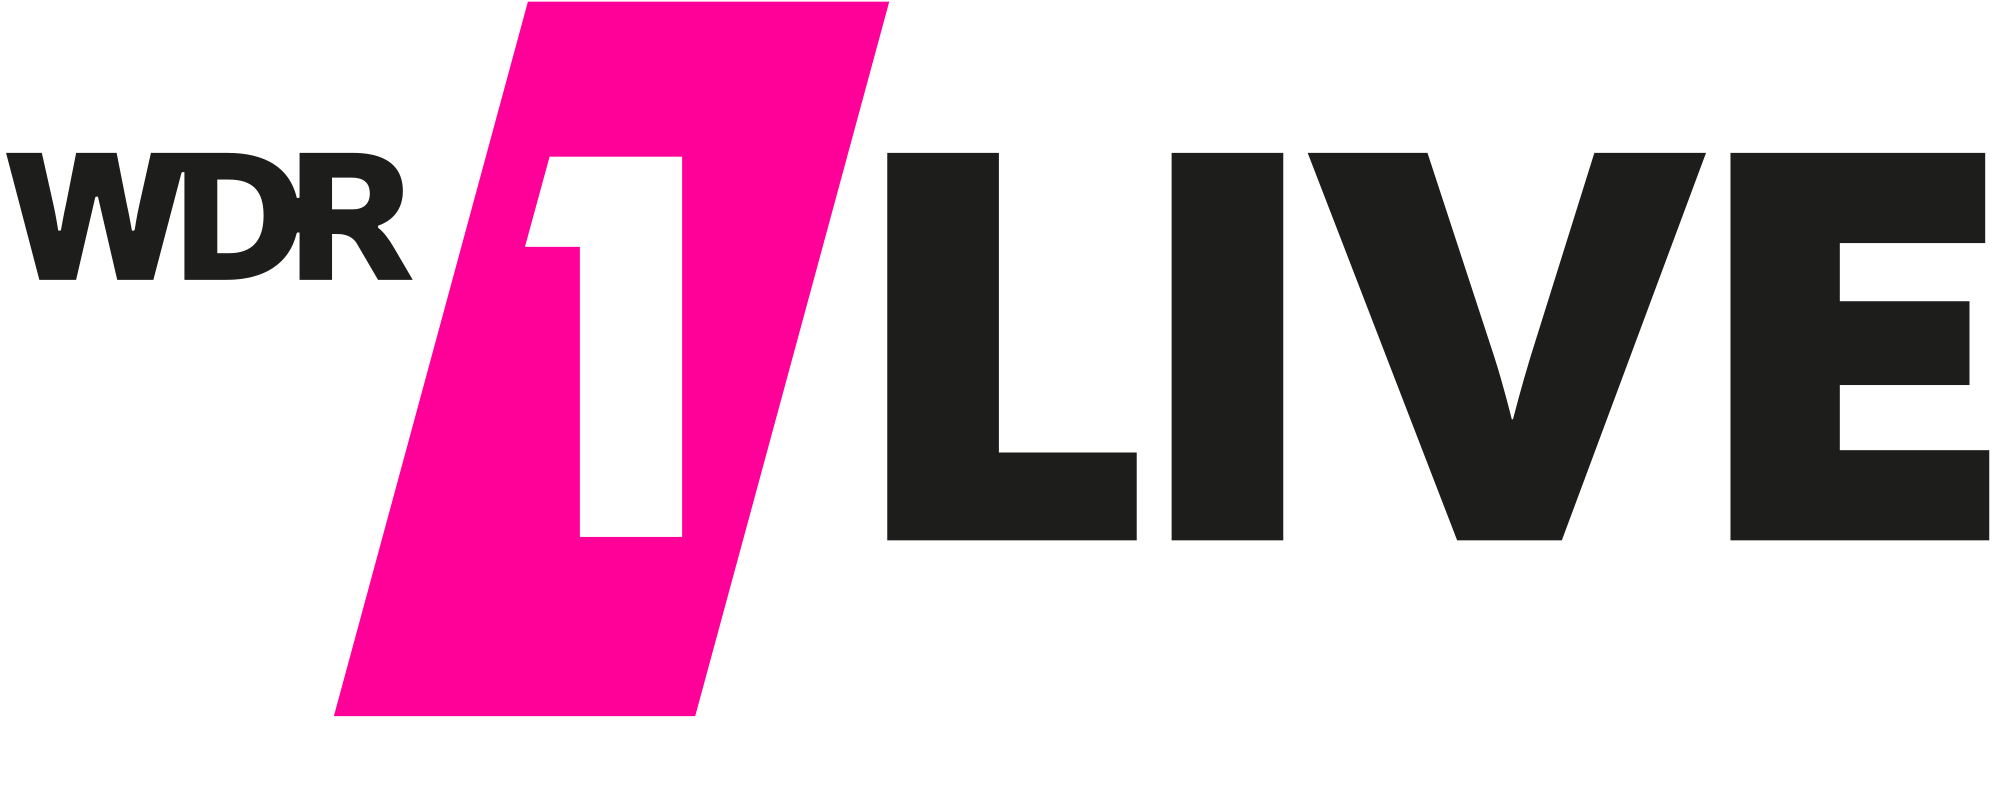 WDR_1LIVE_Logo_2016.svg